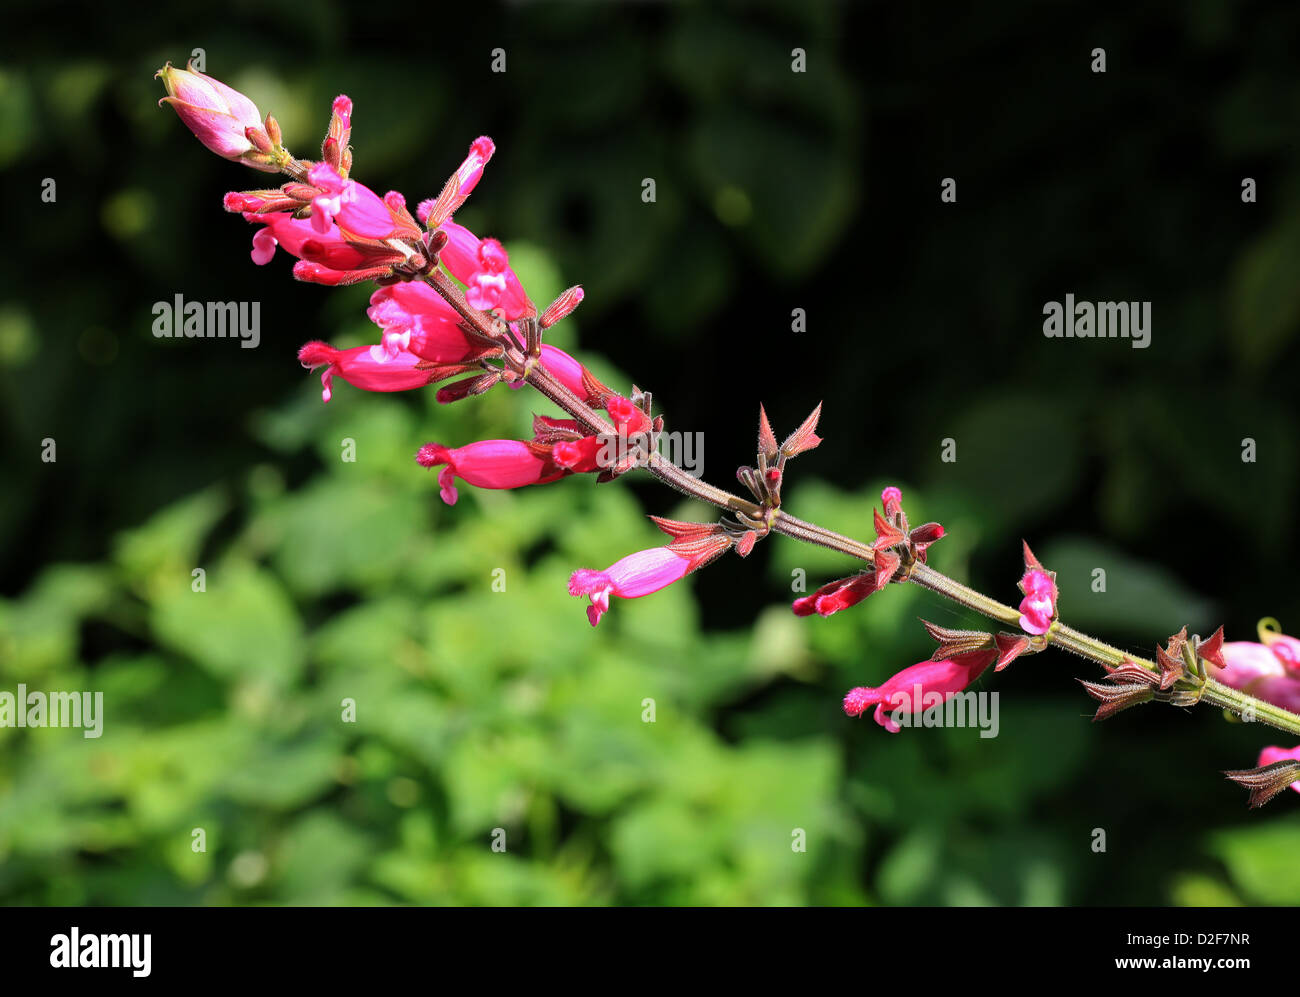 Rose Blatt Salbei, Salvia Involucrata "Boutin", Lamiaceae. Mexiko. Stockfoto